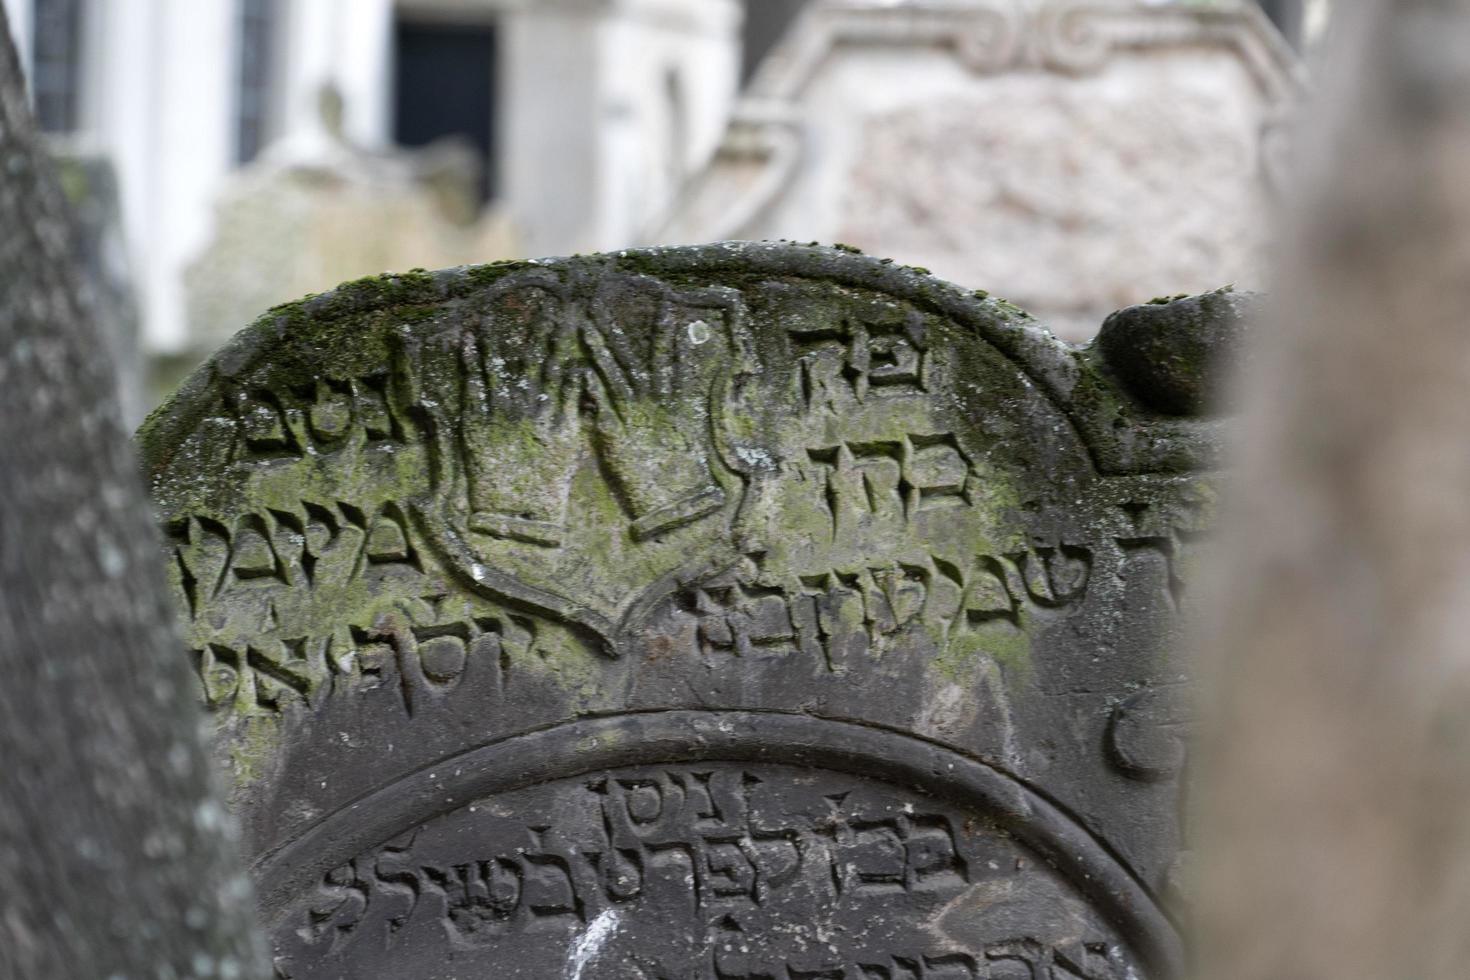 praga, república checa - 17 de julio de 2019 - antiguo cementerio judío en praga foto